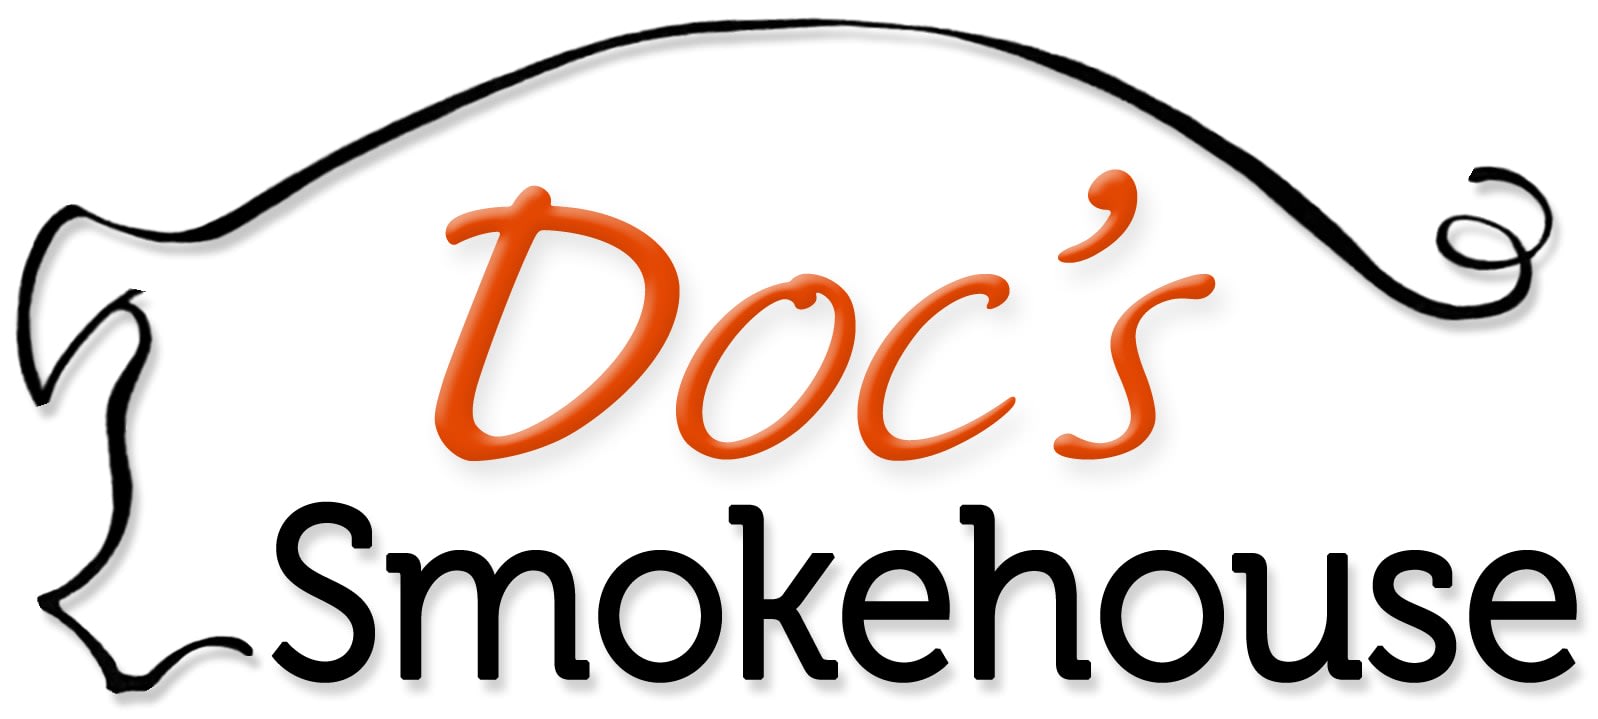 Docs Smokehouse